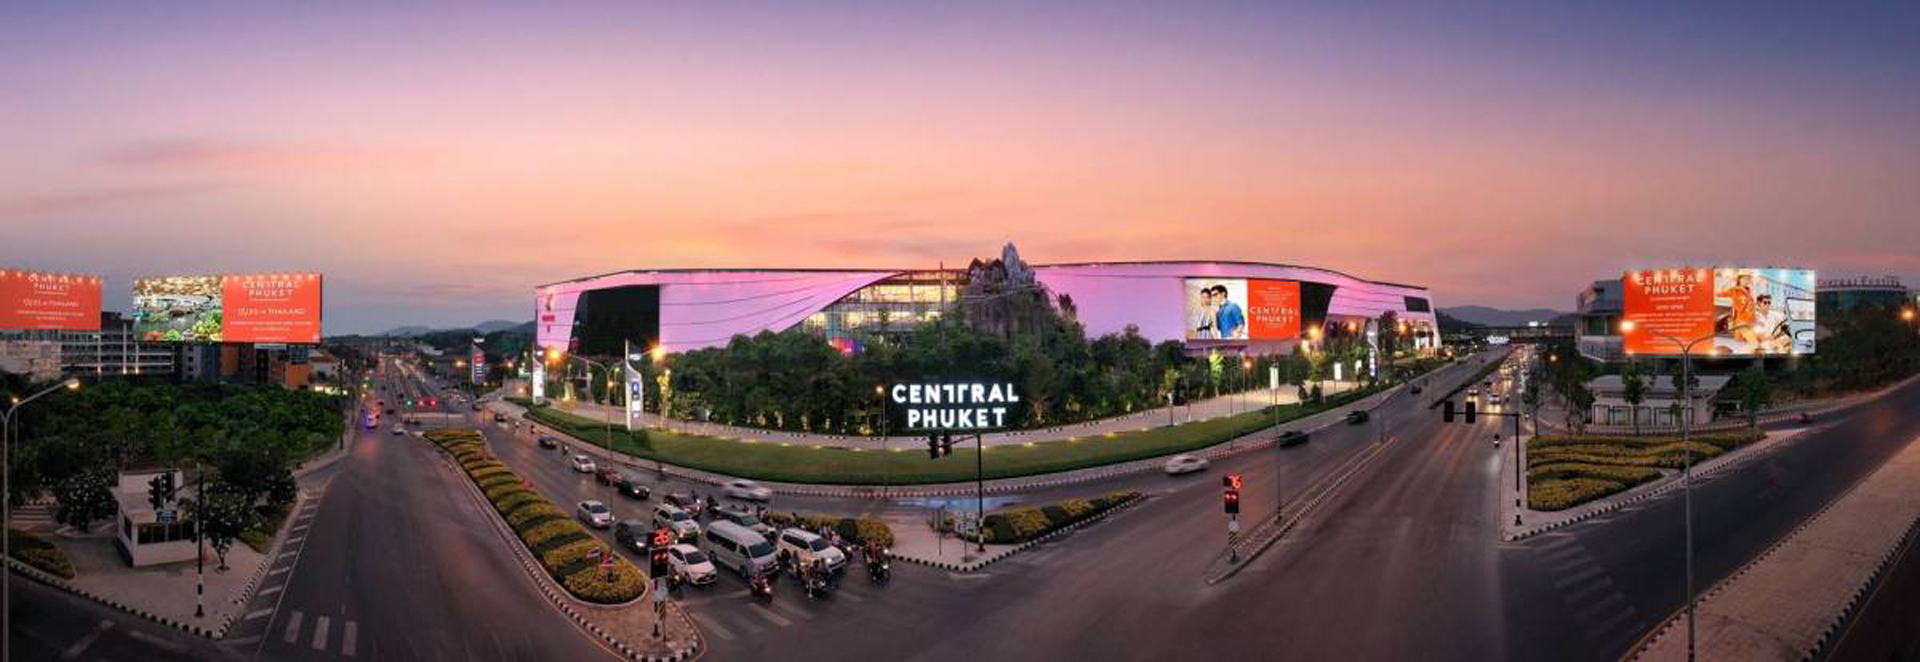 Central Festival Mall in Phuket